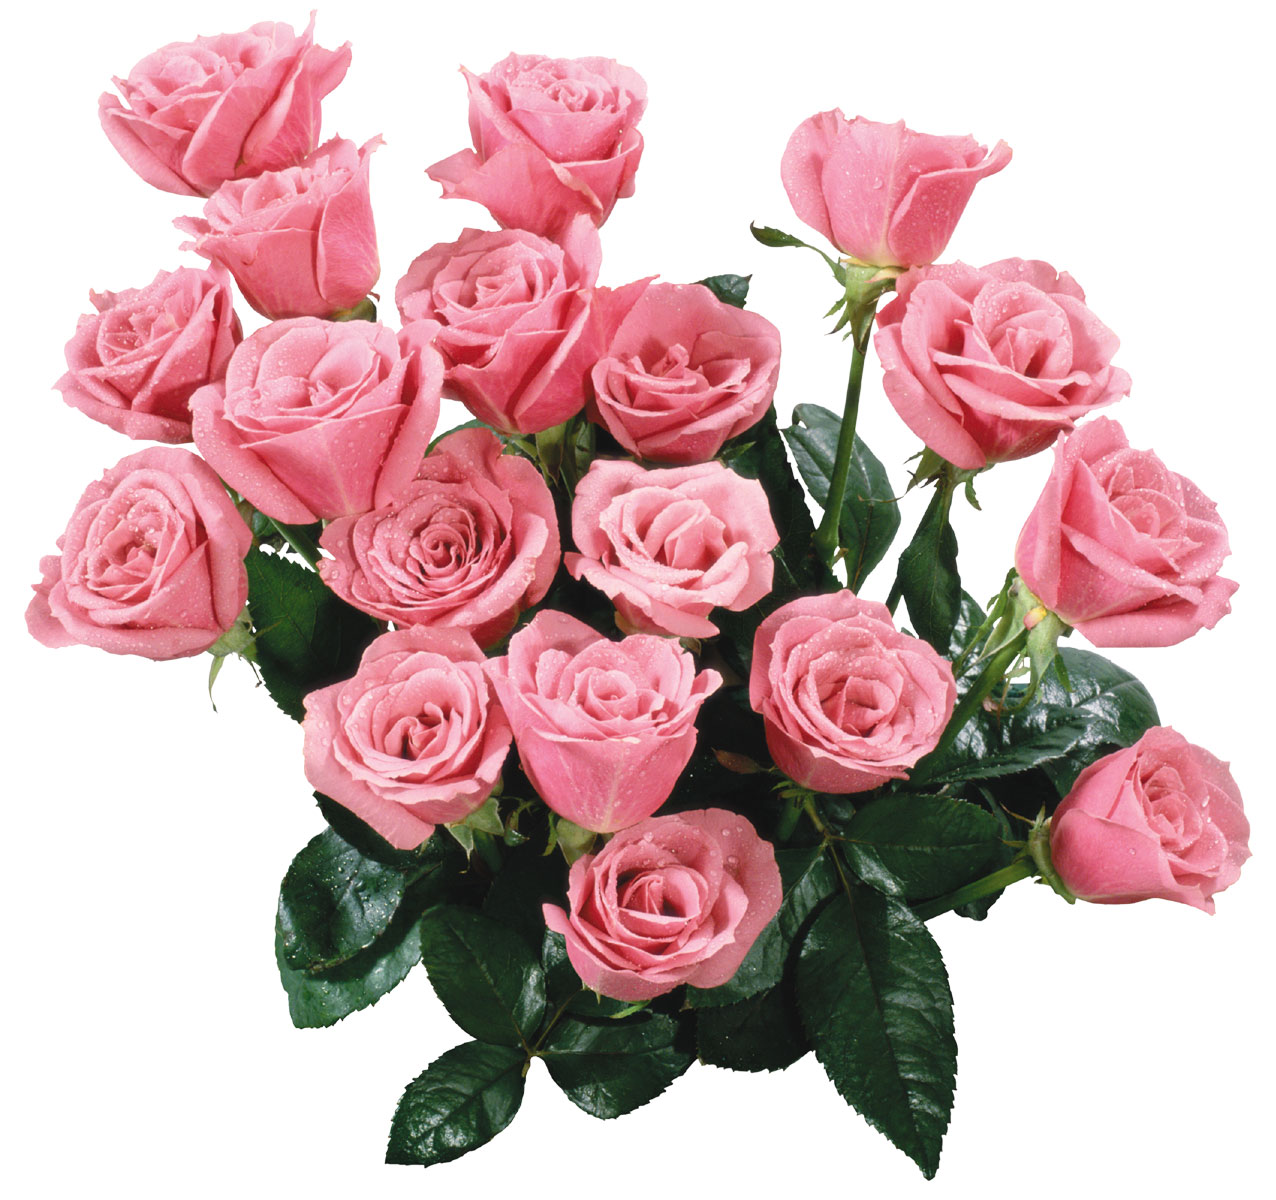 花や葉の写真 画像 フリー素材 花束no 939 バラの花束 ピンク